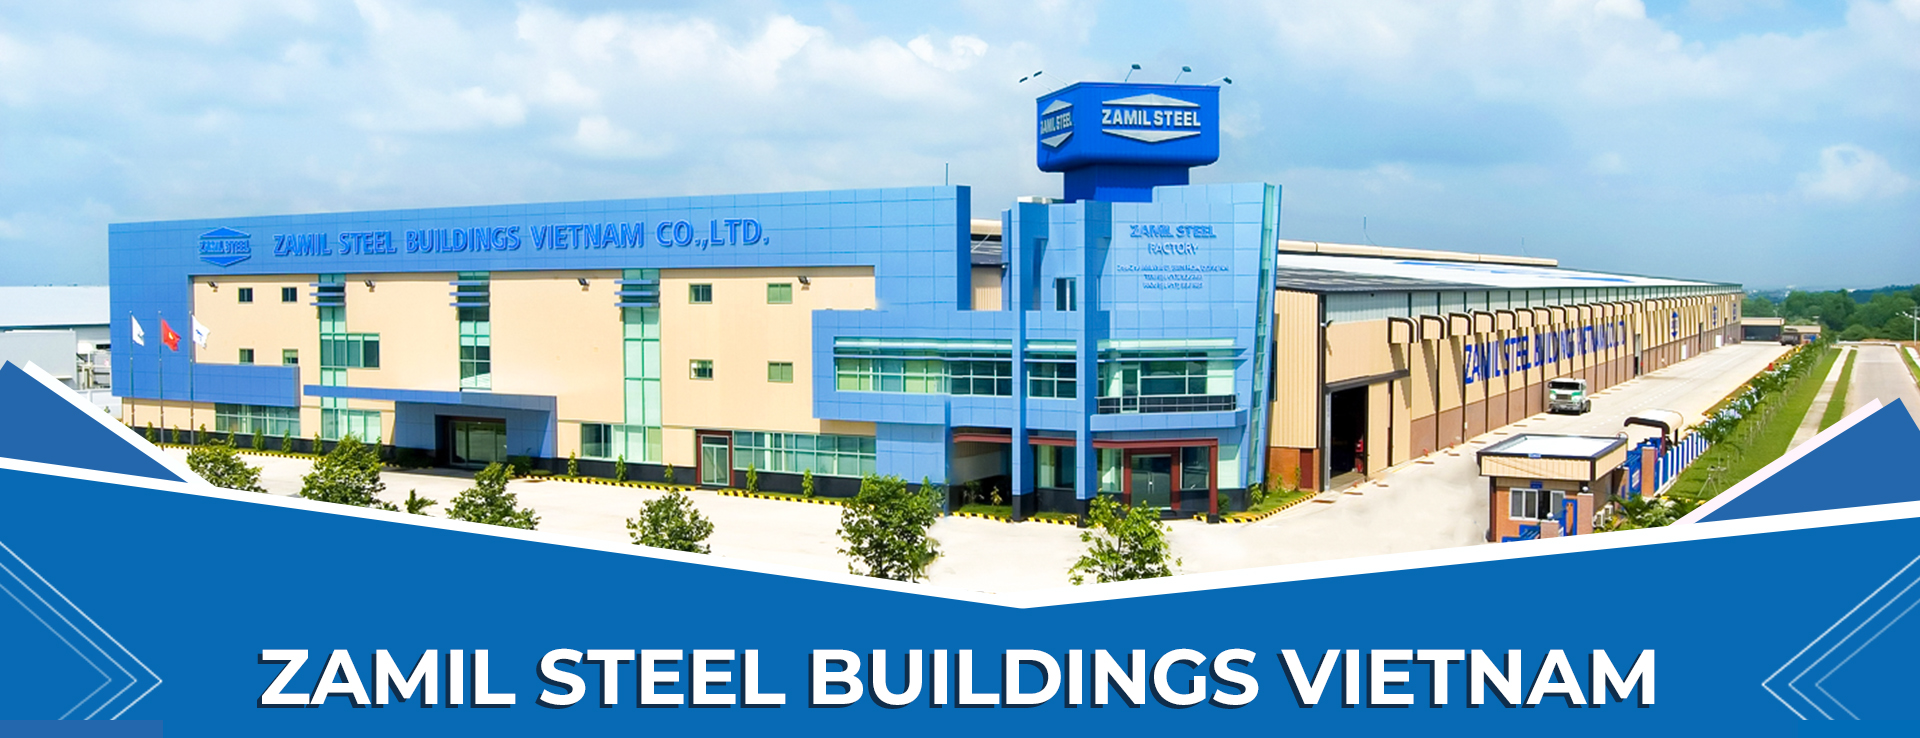 Kết cấu thép - Zamil Steel Buildings Vietnam:
Xây nhà và các dự án với vật liệu kết cấu thép Zamil Steel Buildings Vietnam là một trong những giải pháp đáng tin cậy và lý tưởng nhất. Với những tiêu chuẩn cao nhất trong trang thiết bị và kỹ thuật mạnh mẽ, Zamil Steel Buildings Vietnam luôn đảm bảo tính ổn định và an toàn cho dự án của bạn. Hãy tham khảo những hình ảnh tuyệt đẹp để tìm hiểu thêm về sản phẩm chất lượng này.